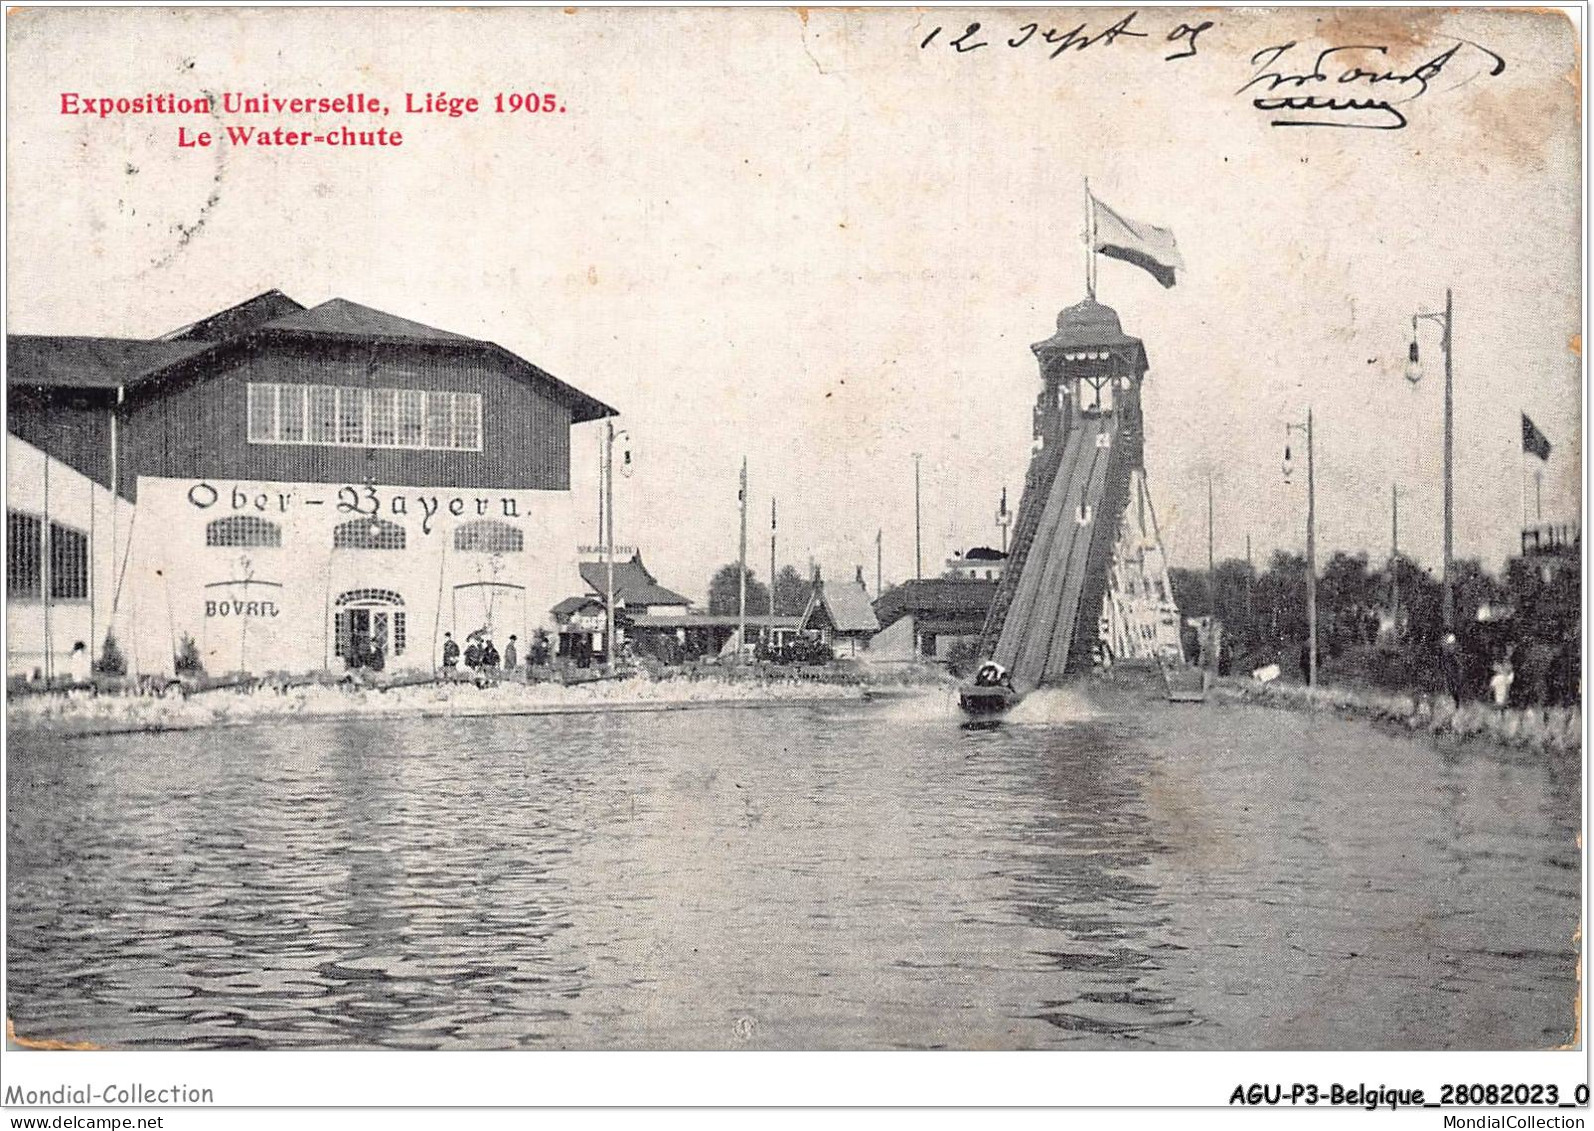 AGUP3-0144-BELGIQUE - Exposition Universelle - LIEGE 1905 - Le Water-chute - Luik